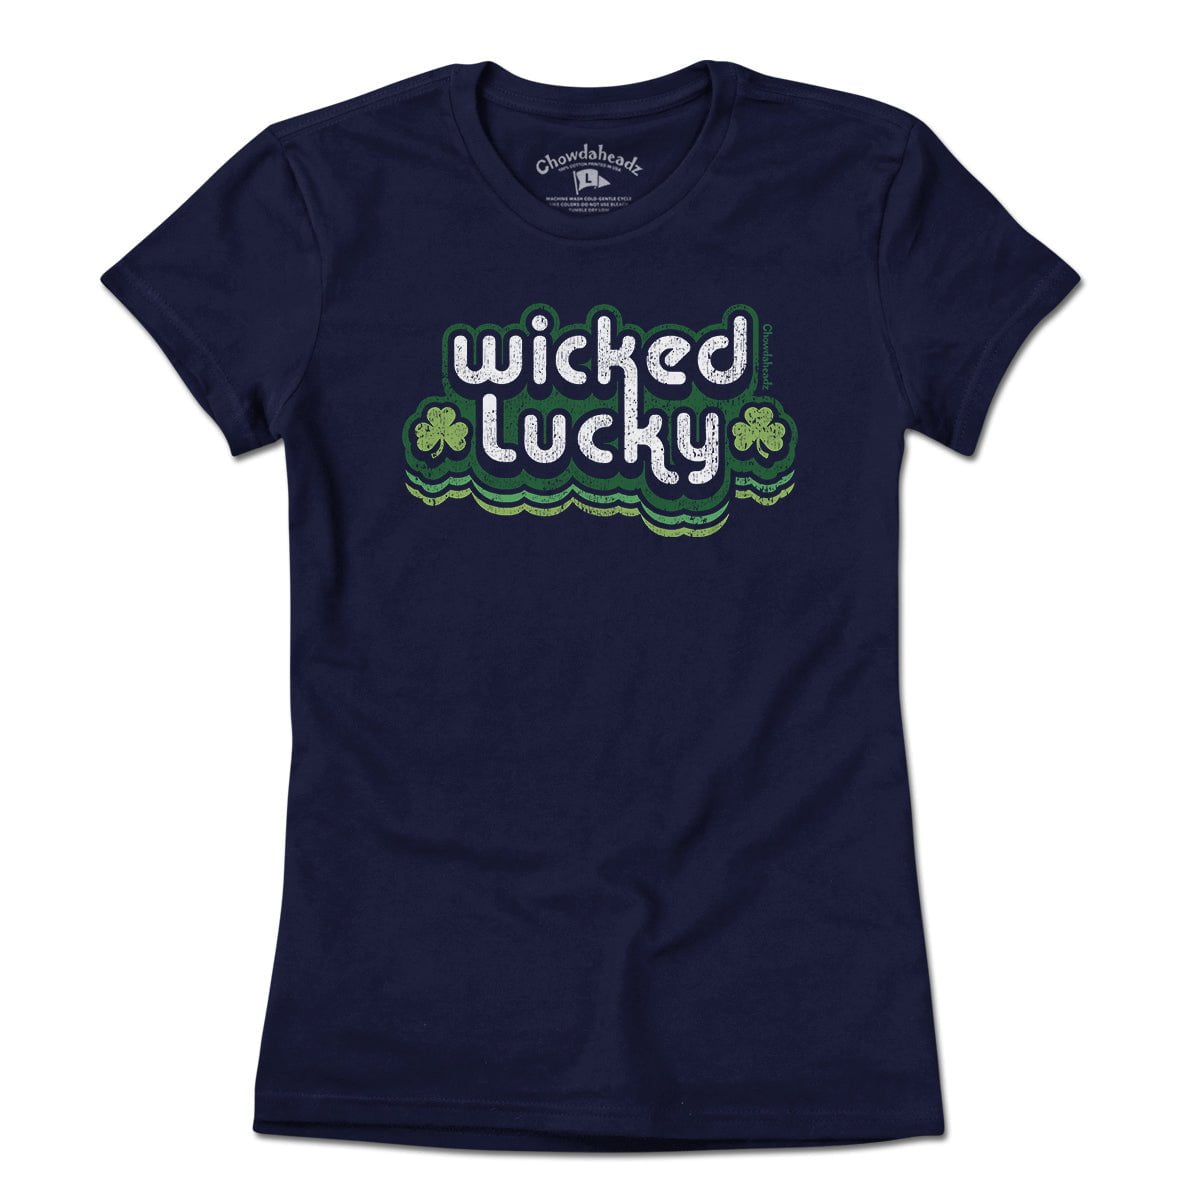 Wicked Lucky Retro T-Shirt - Chowdaheadz